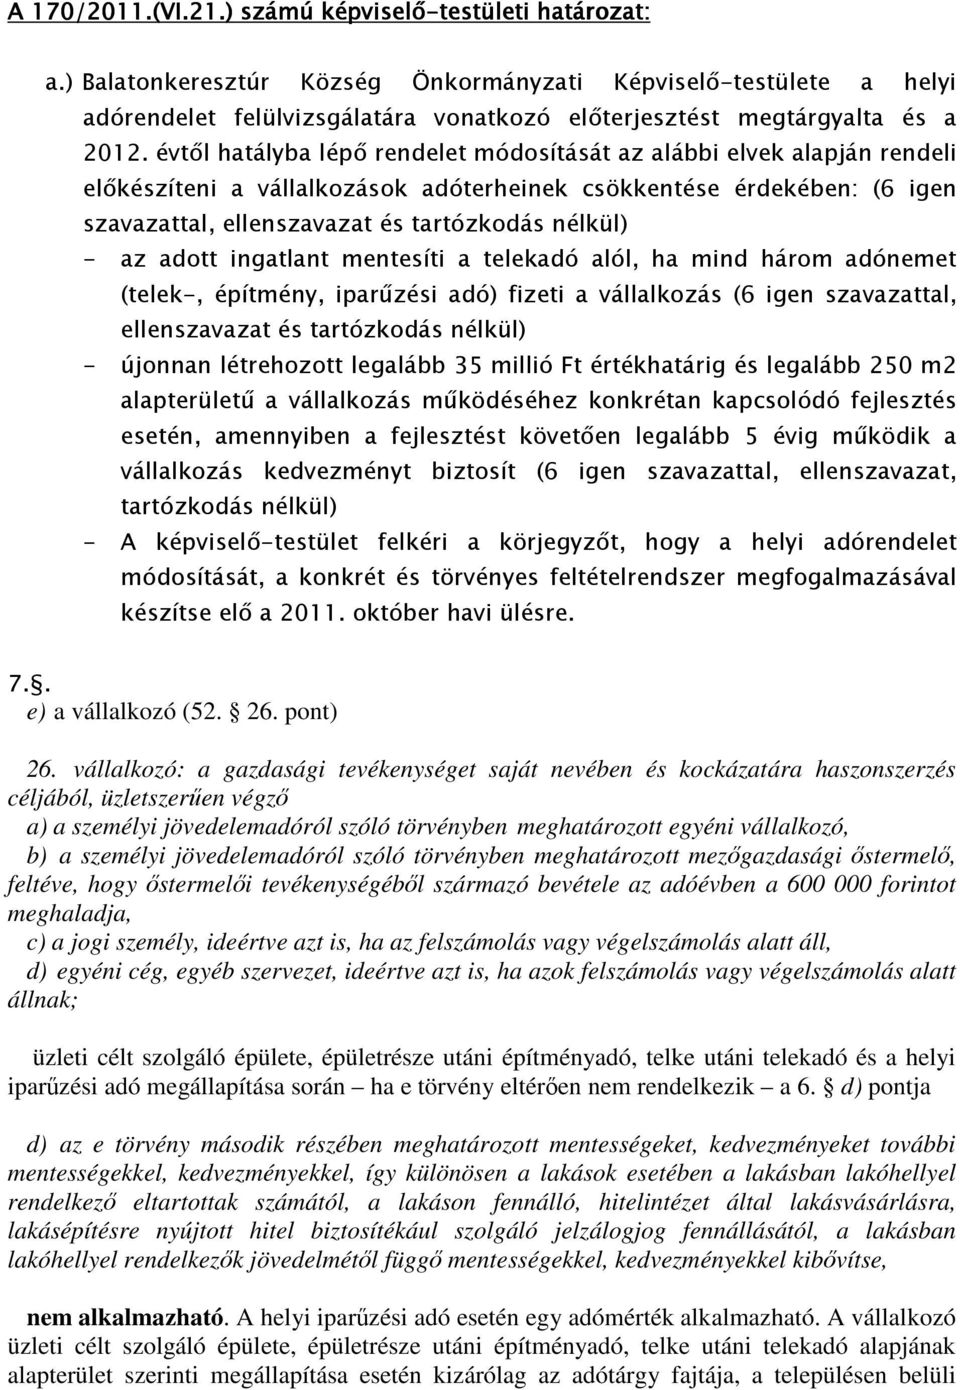 évtıl hatályba lépı rendelet módosítását az alábbi elvek alapján rendeli elıkészíteni a vállalkozások adóterheinek csökkentése érdekében: (6 igen szavazattal, ellenszavazat és tartózkodás nélkül) -